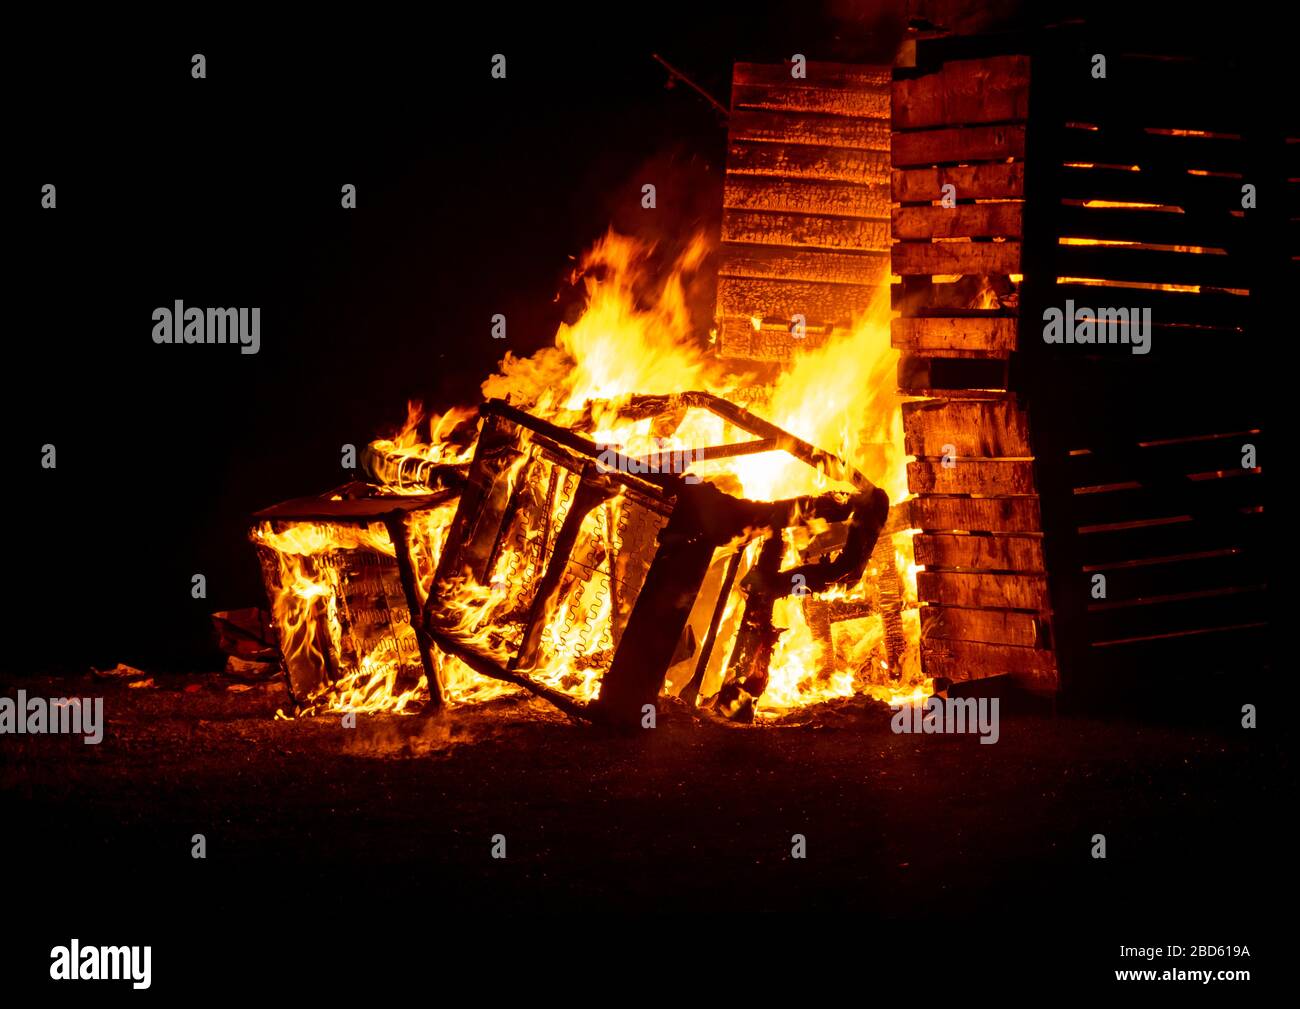 Un feu de caisses en bois incendié dans l'obscurité avec des flammes orange vives et un fond sombre Banque D'Images